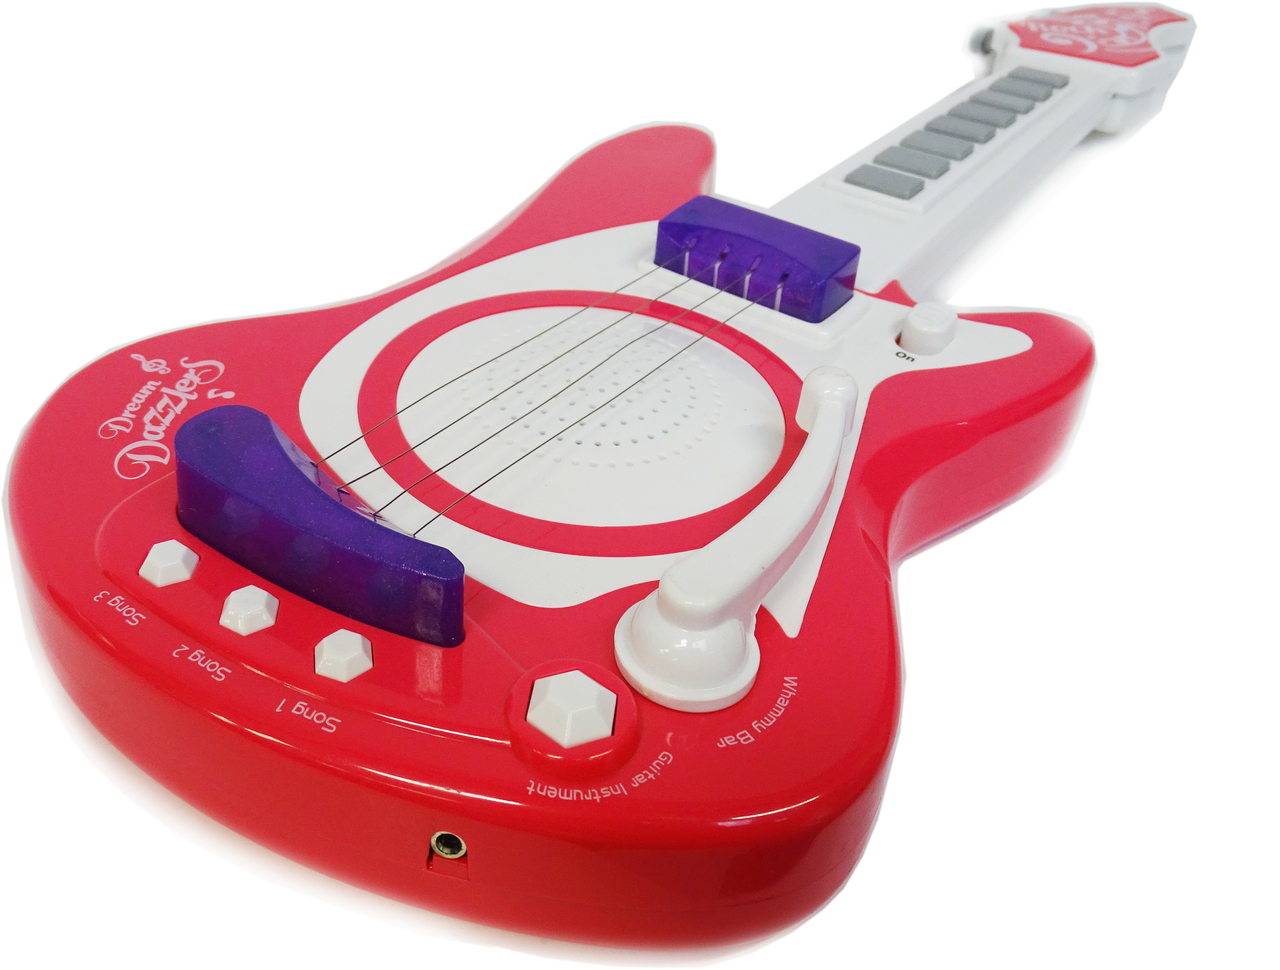 wijk over het algemeen Cornwall Speelgoed elektrische muziek gitaar met microfoon - Music guitar + mic. -  24winkelen